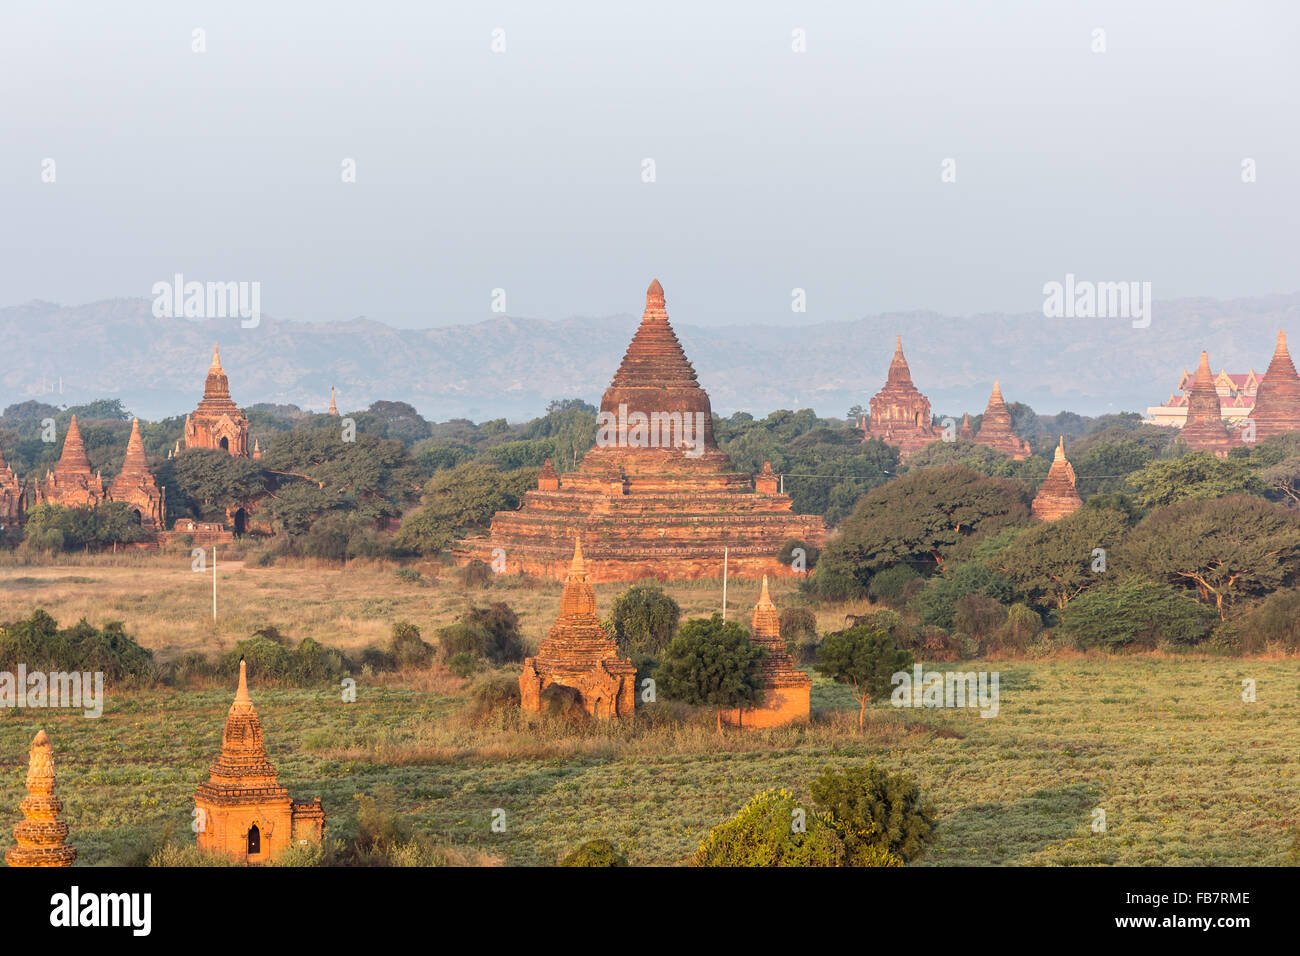 Vue de la pagode Shwe Sandaw pendant le coucher du soleil à Bagan, Myanmar Banque D'Images